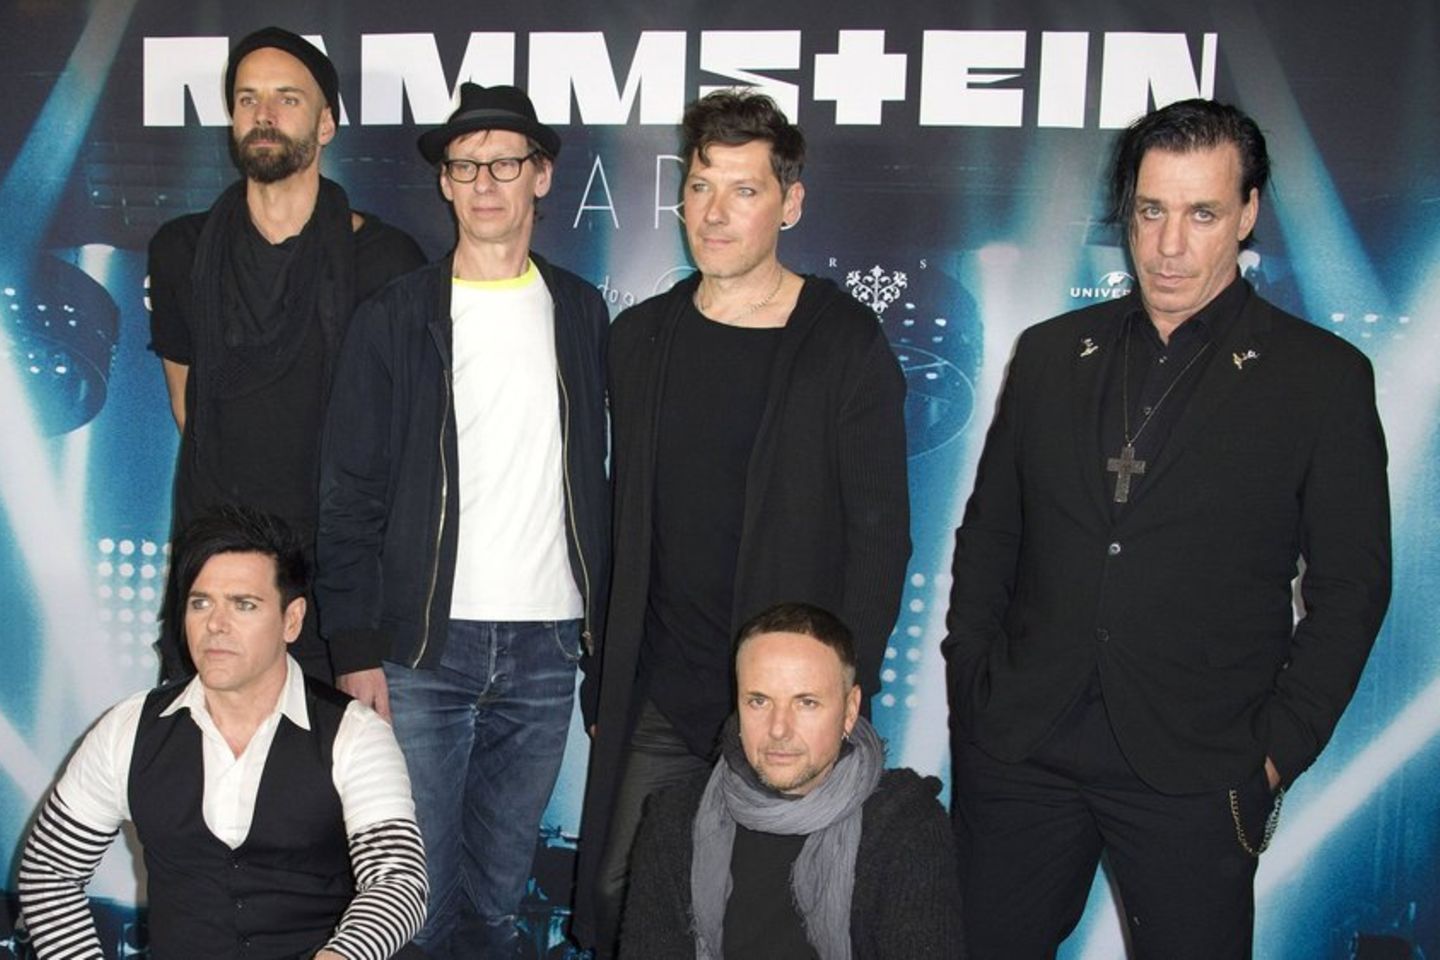 So reagieren Rammstein auf die Vorwürfe gegen Till Lindemann